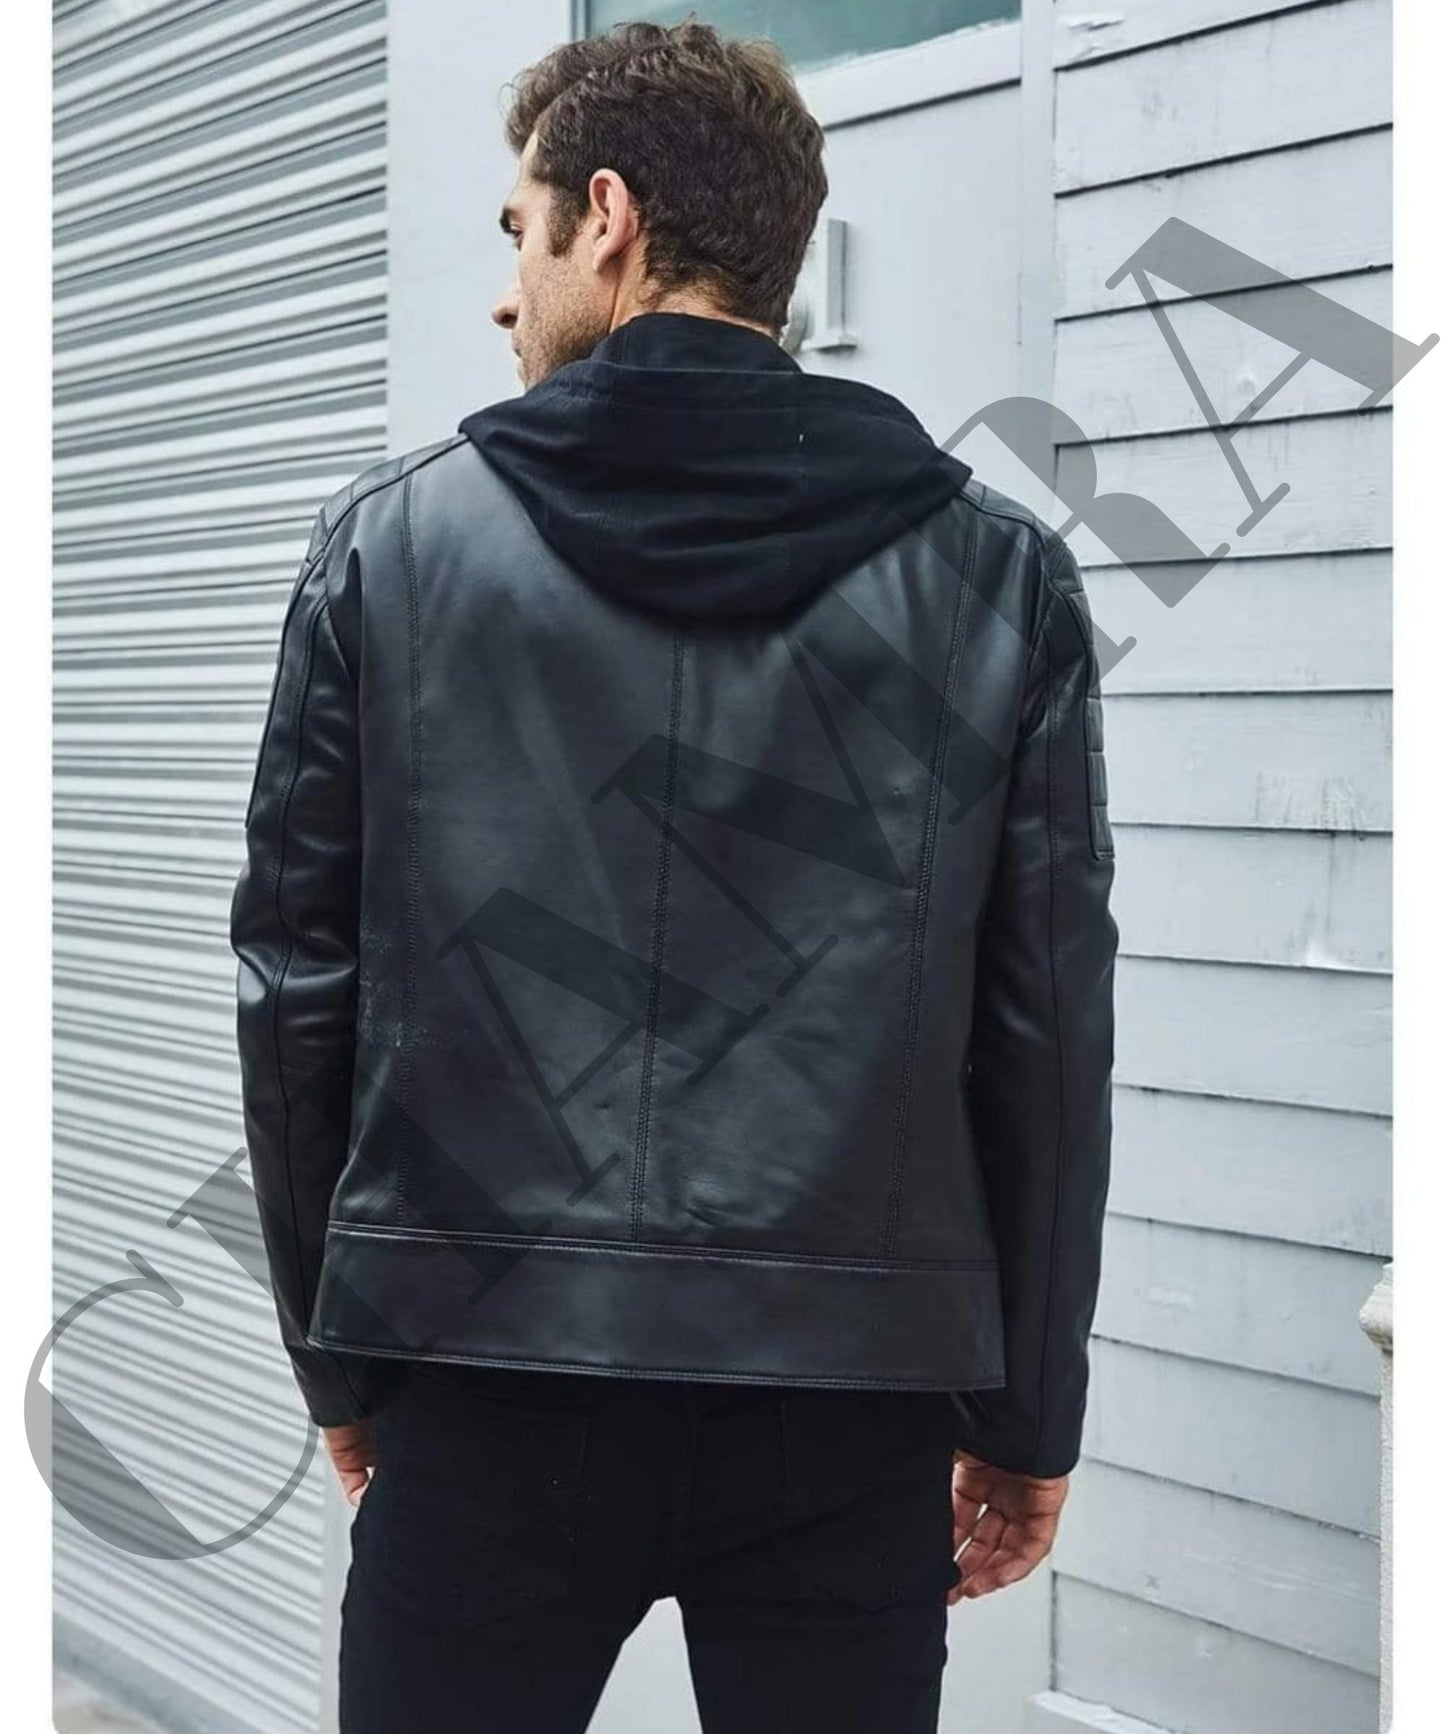 Black Leather Biker Jacket for Men